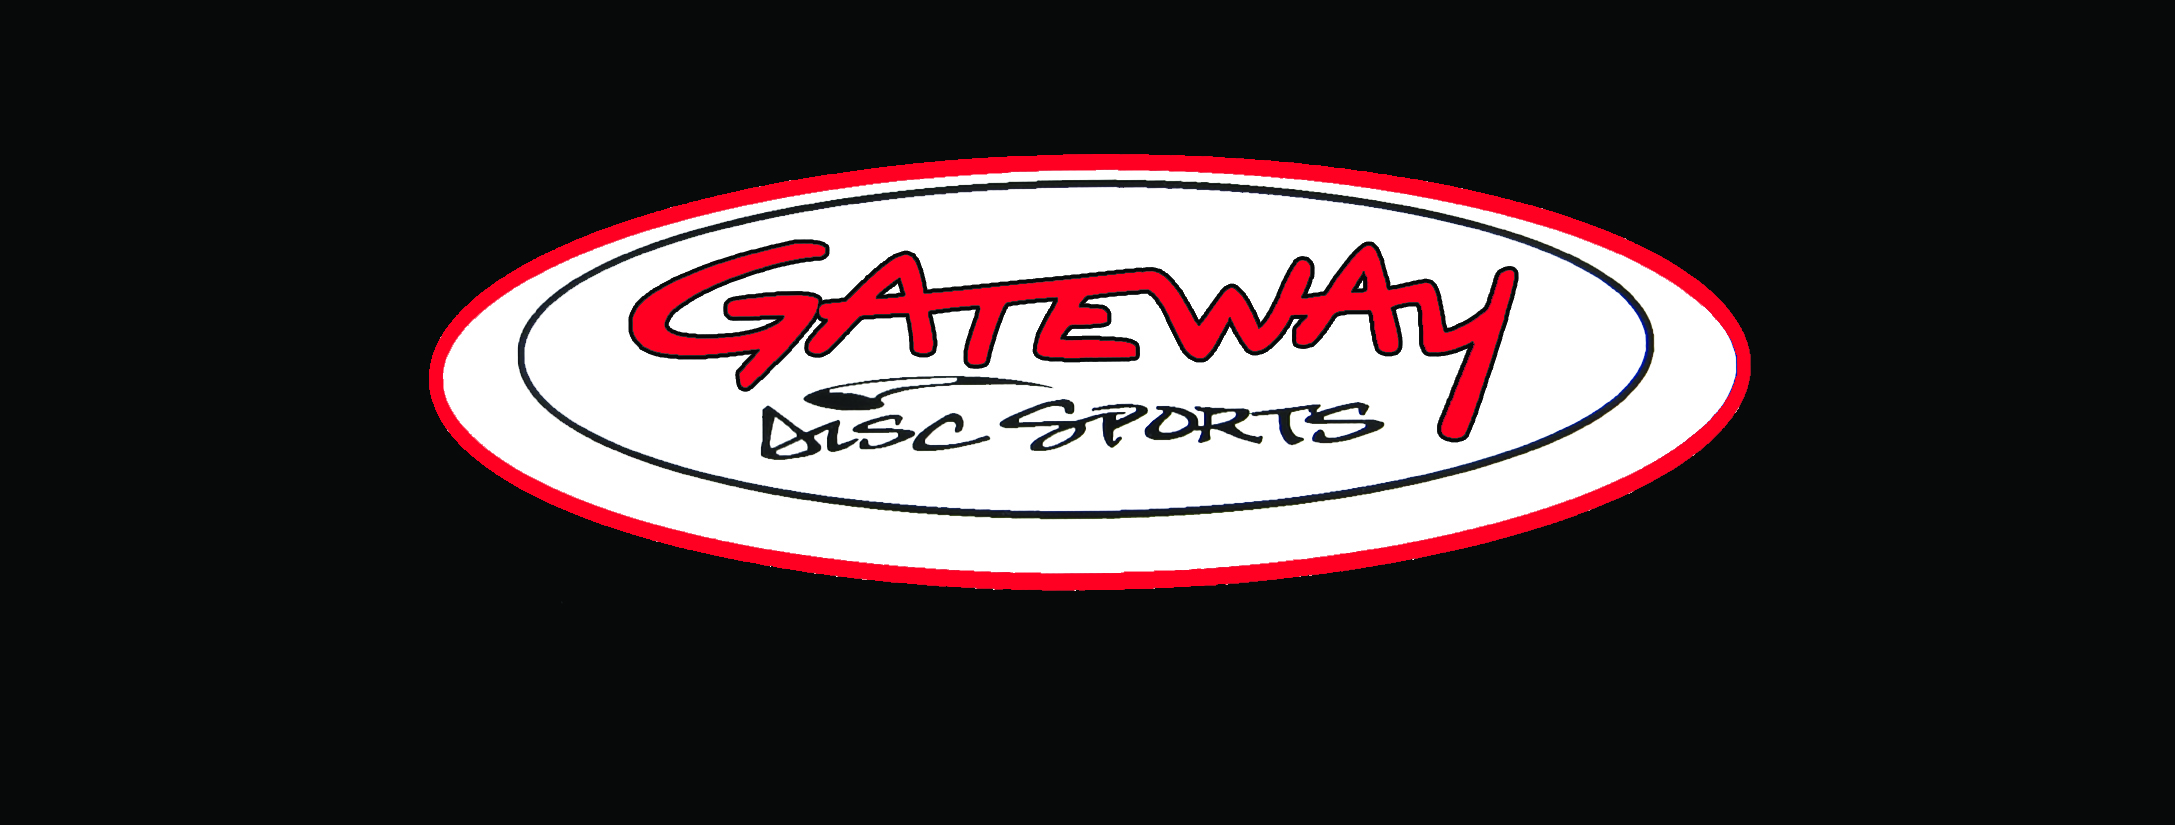 Gateway Discs Buffalo NY